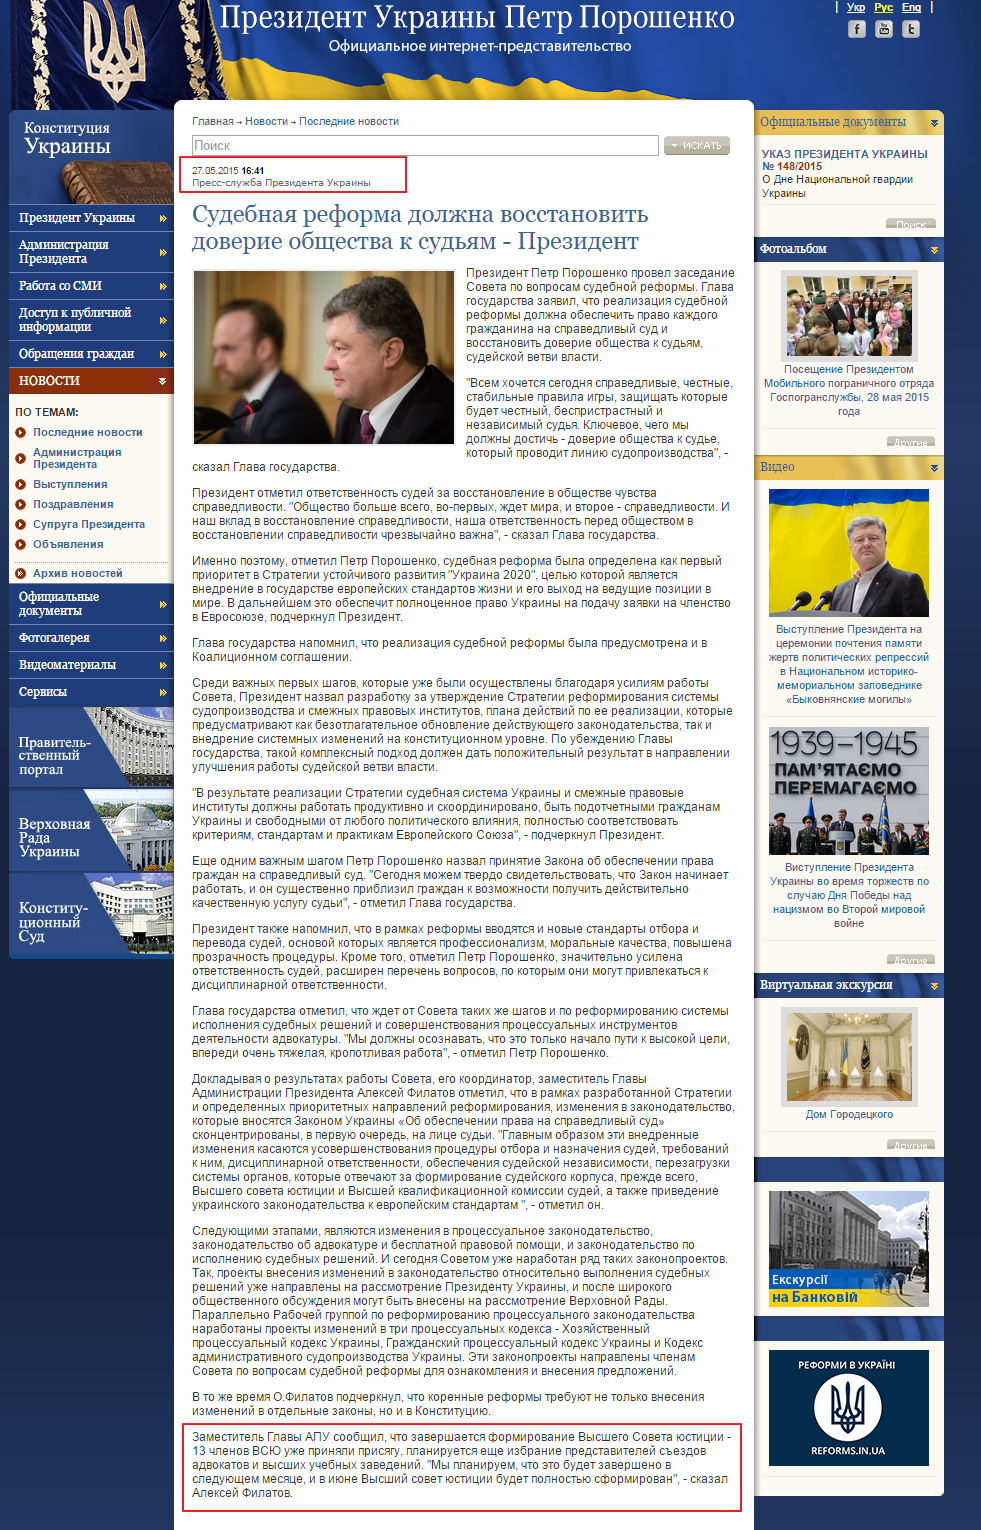 http://president.gov.ua/ru/news/32941.html